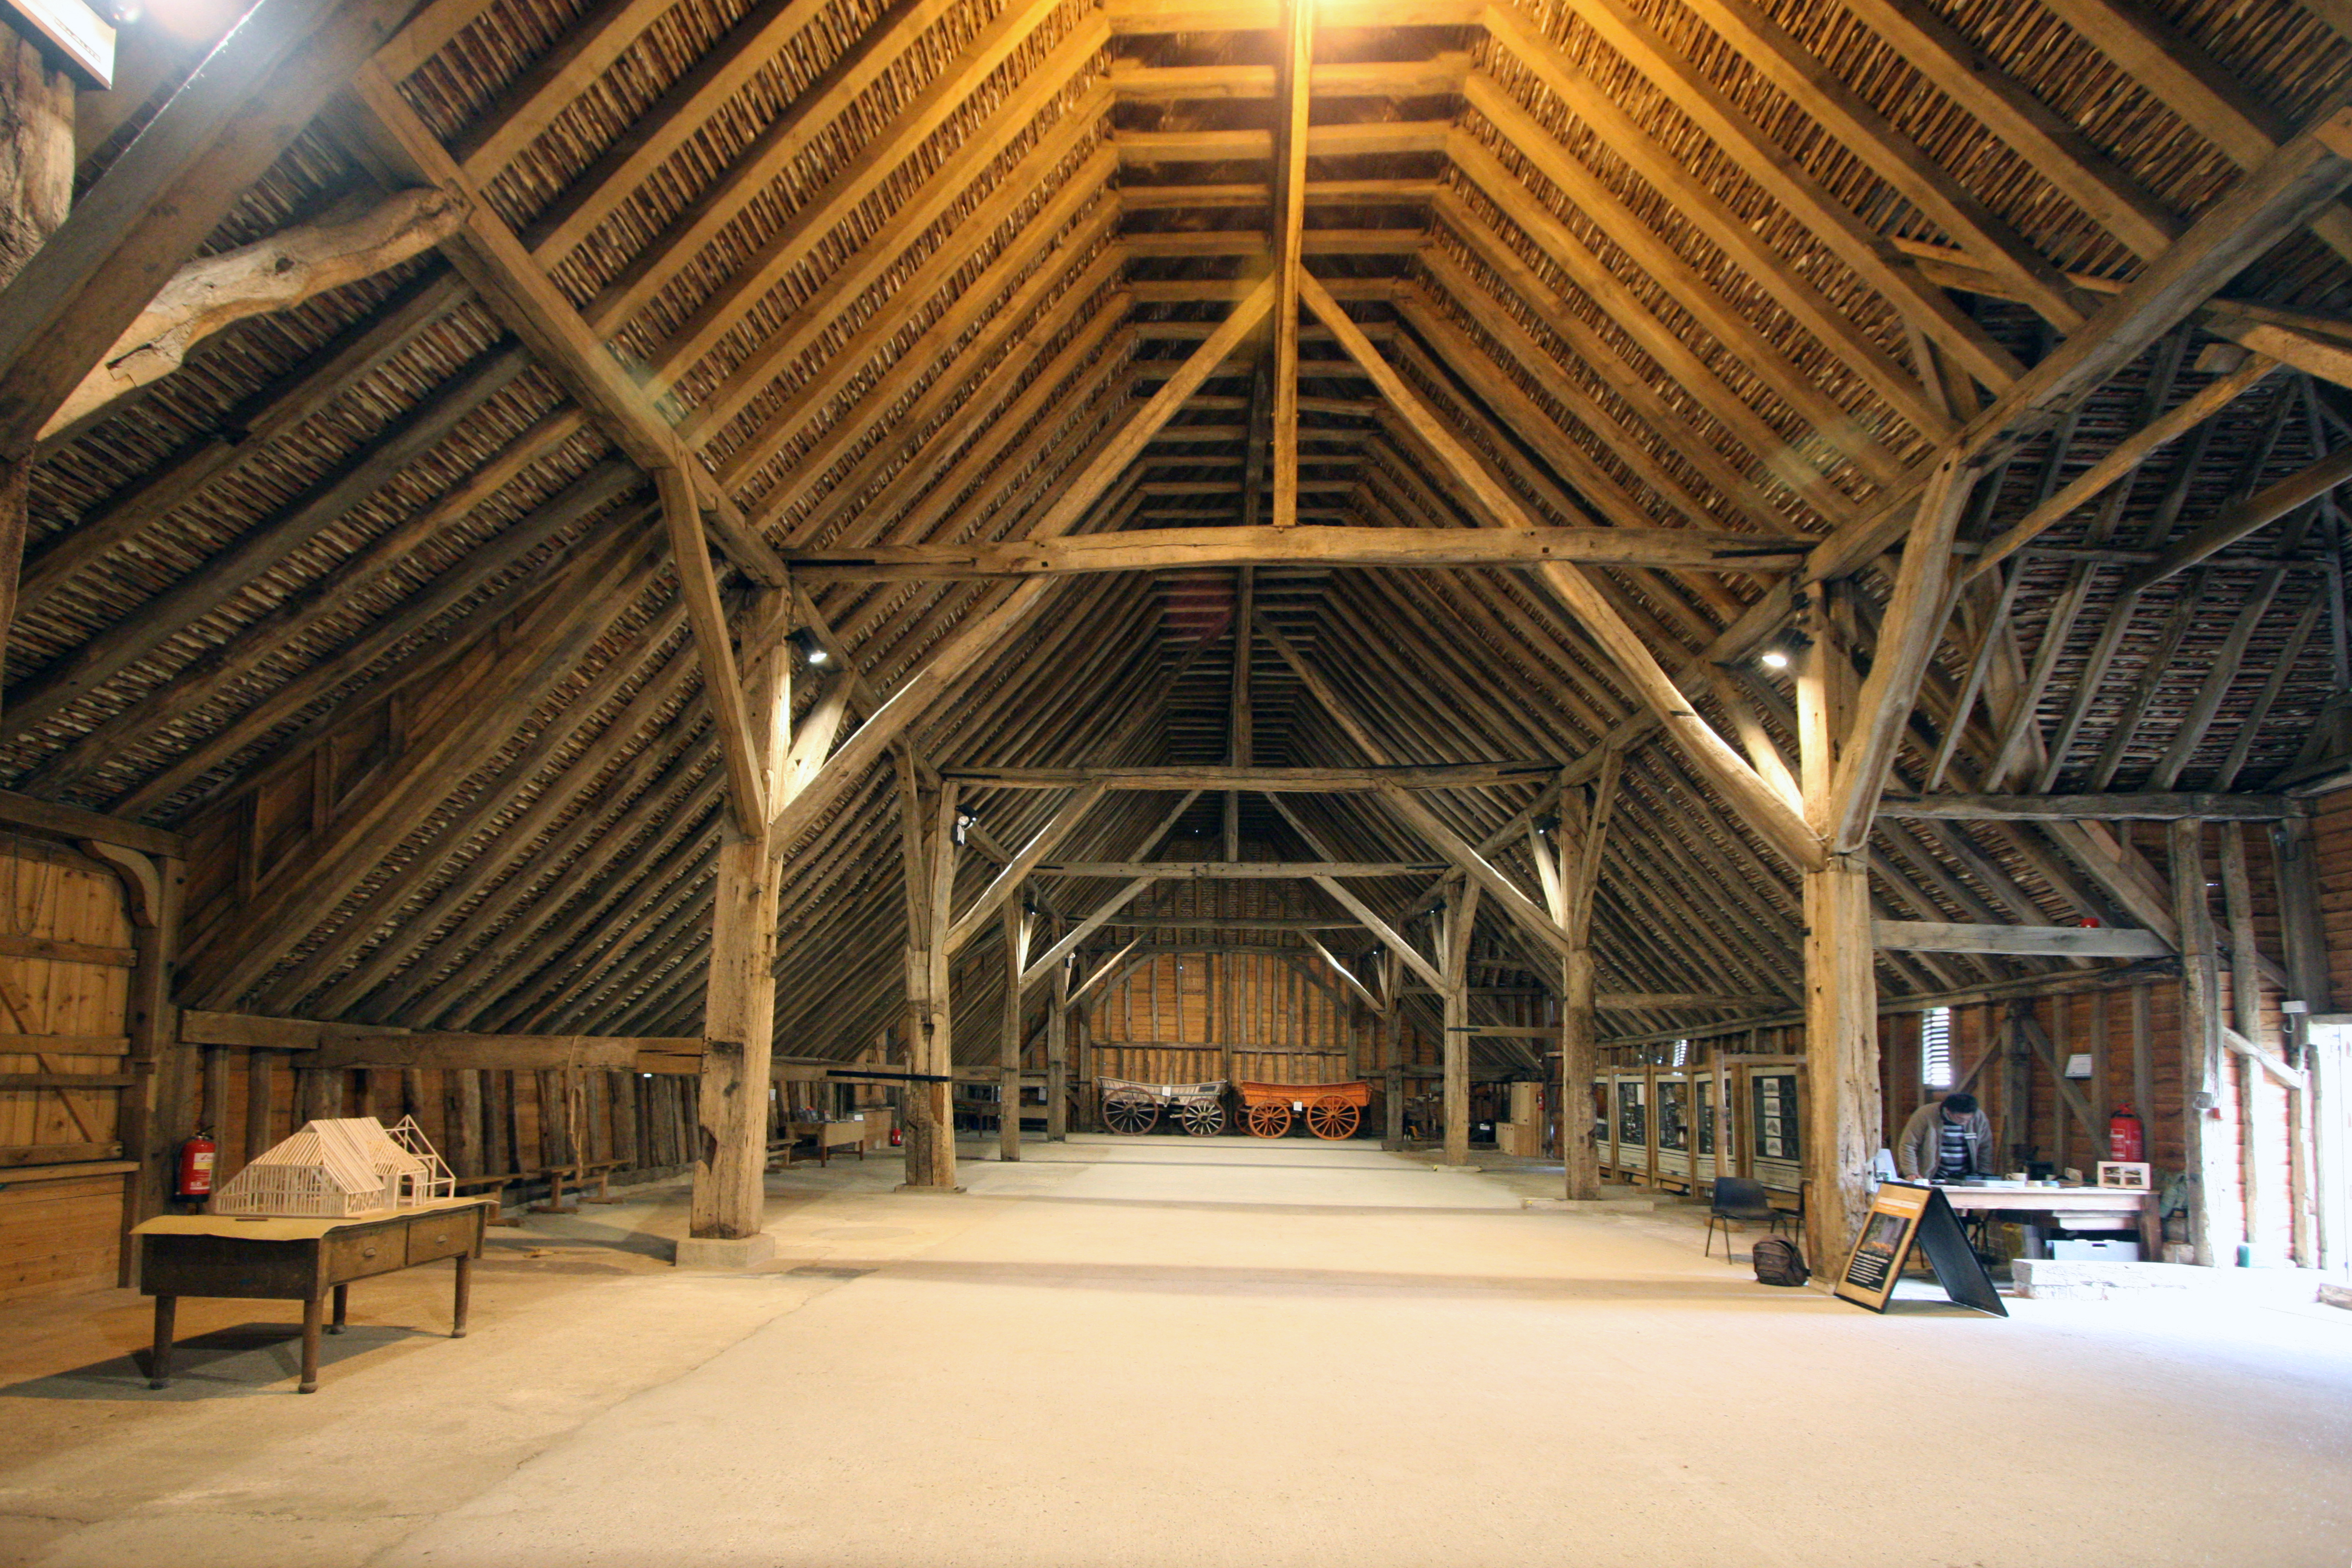 File:GrangeBarn-interior.jpg - Wikimedia Commons